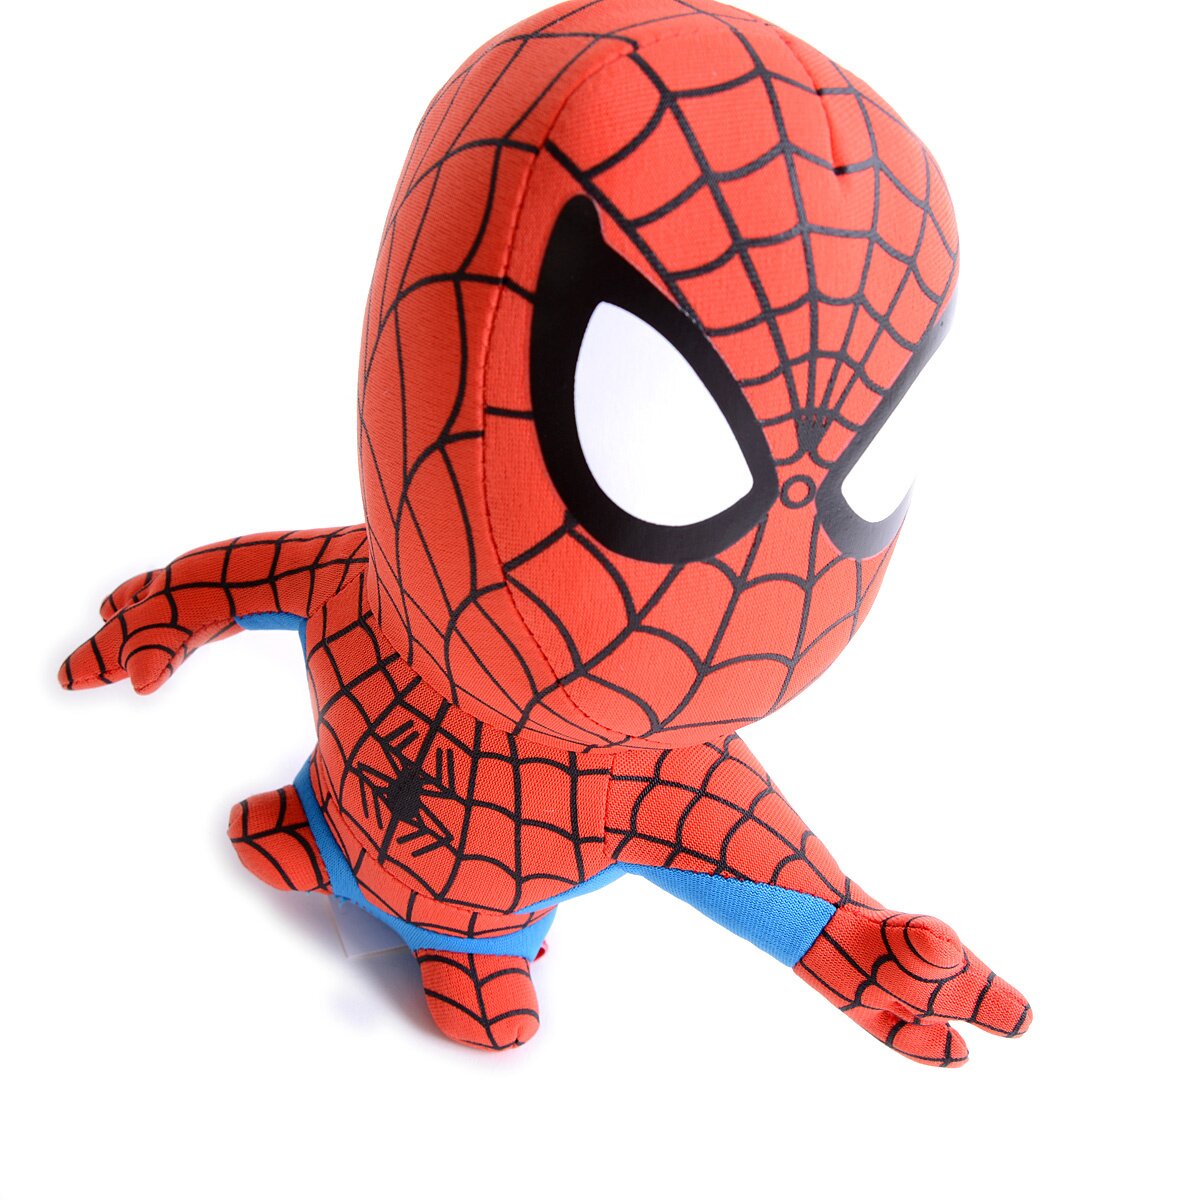 Peluche Spider-Man Super Deformed comprar en tu tienda online Buscalibre  Estados Unidos